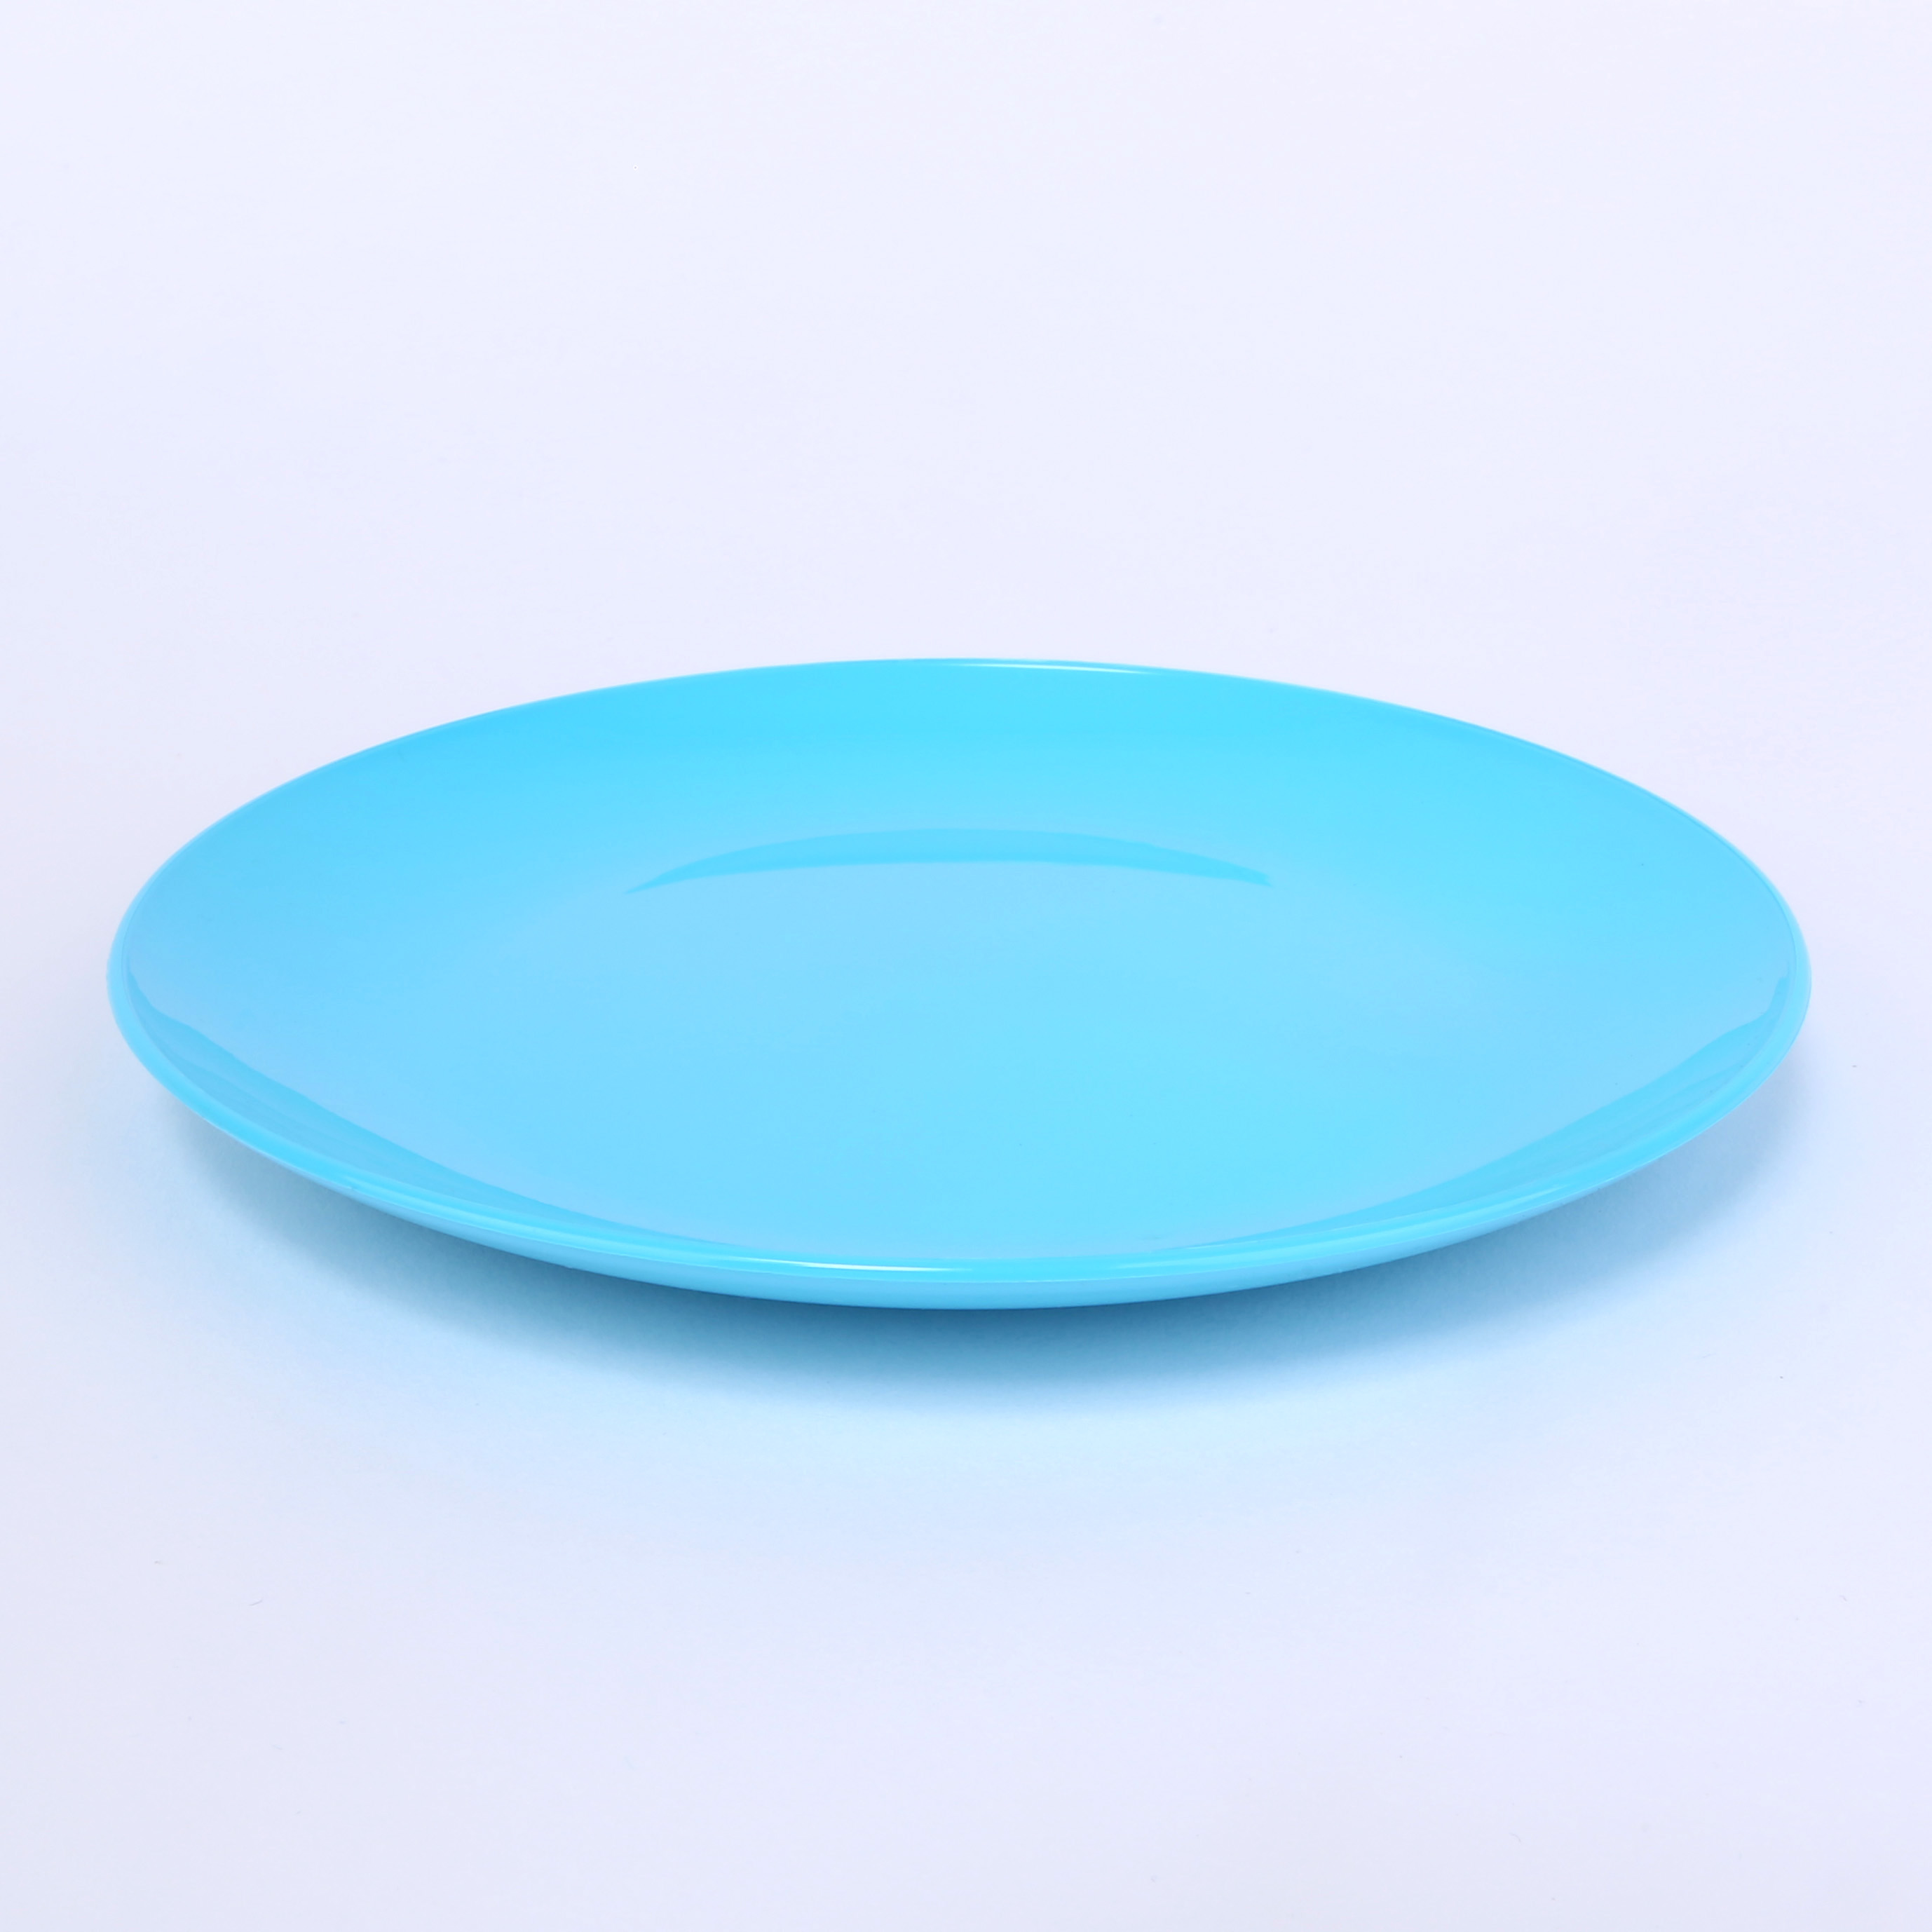 vaLon Zephyr Dessertteller aus Thermoplastischem Kunststoff in der Farbe blau frei von BPA, Dioxin und Formaldehyd